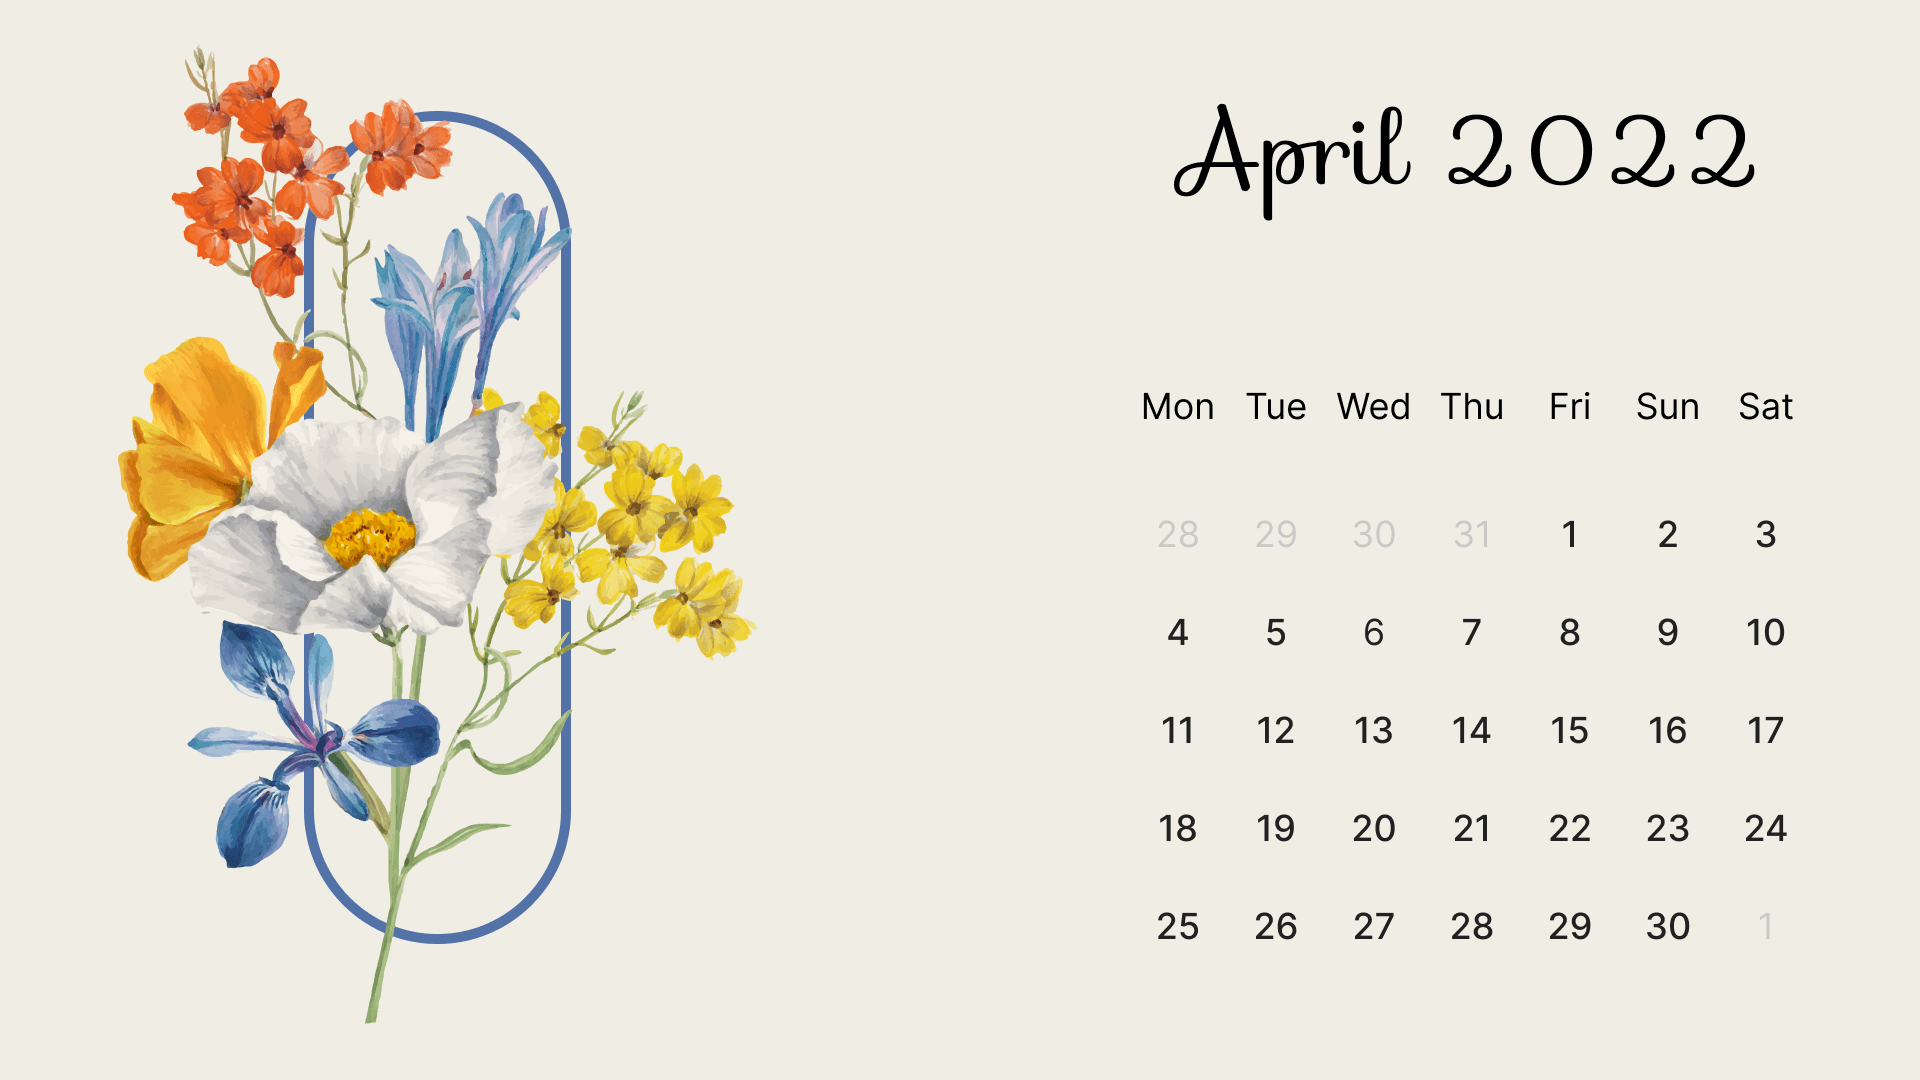 April 2022 Calendar Wallpapers - Wallpaper Cave